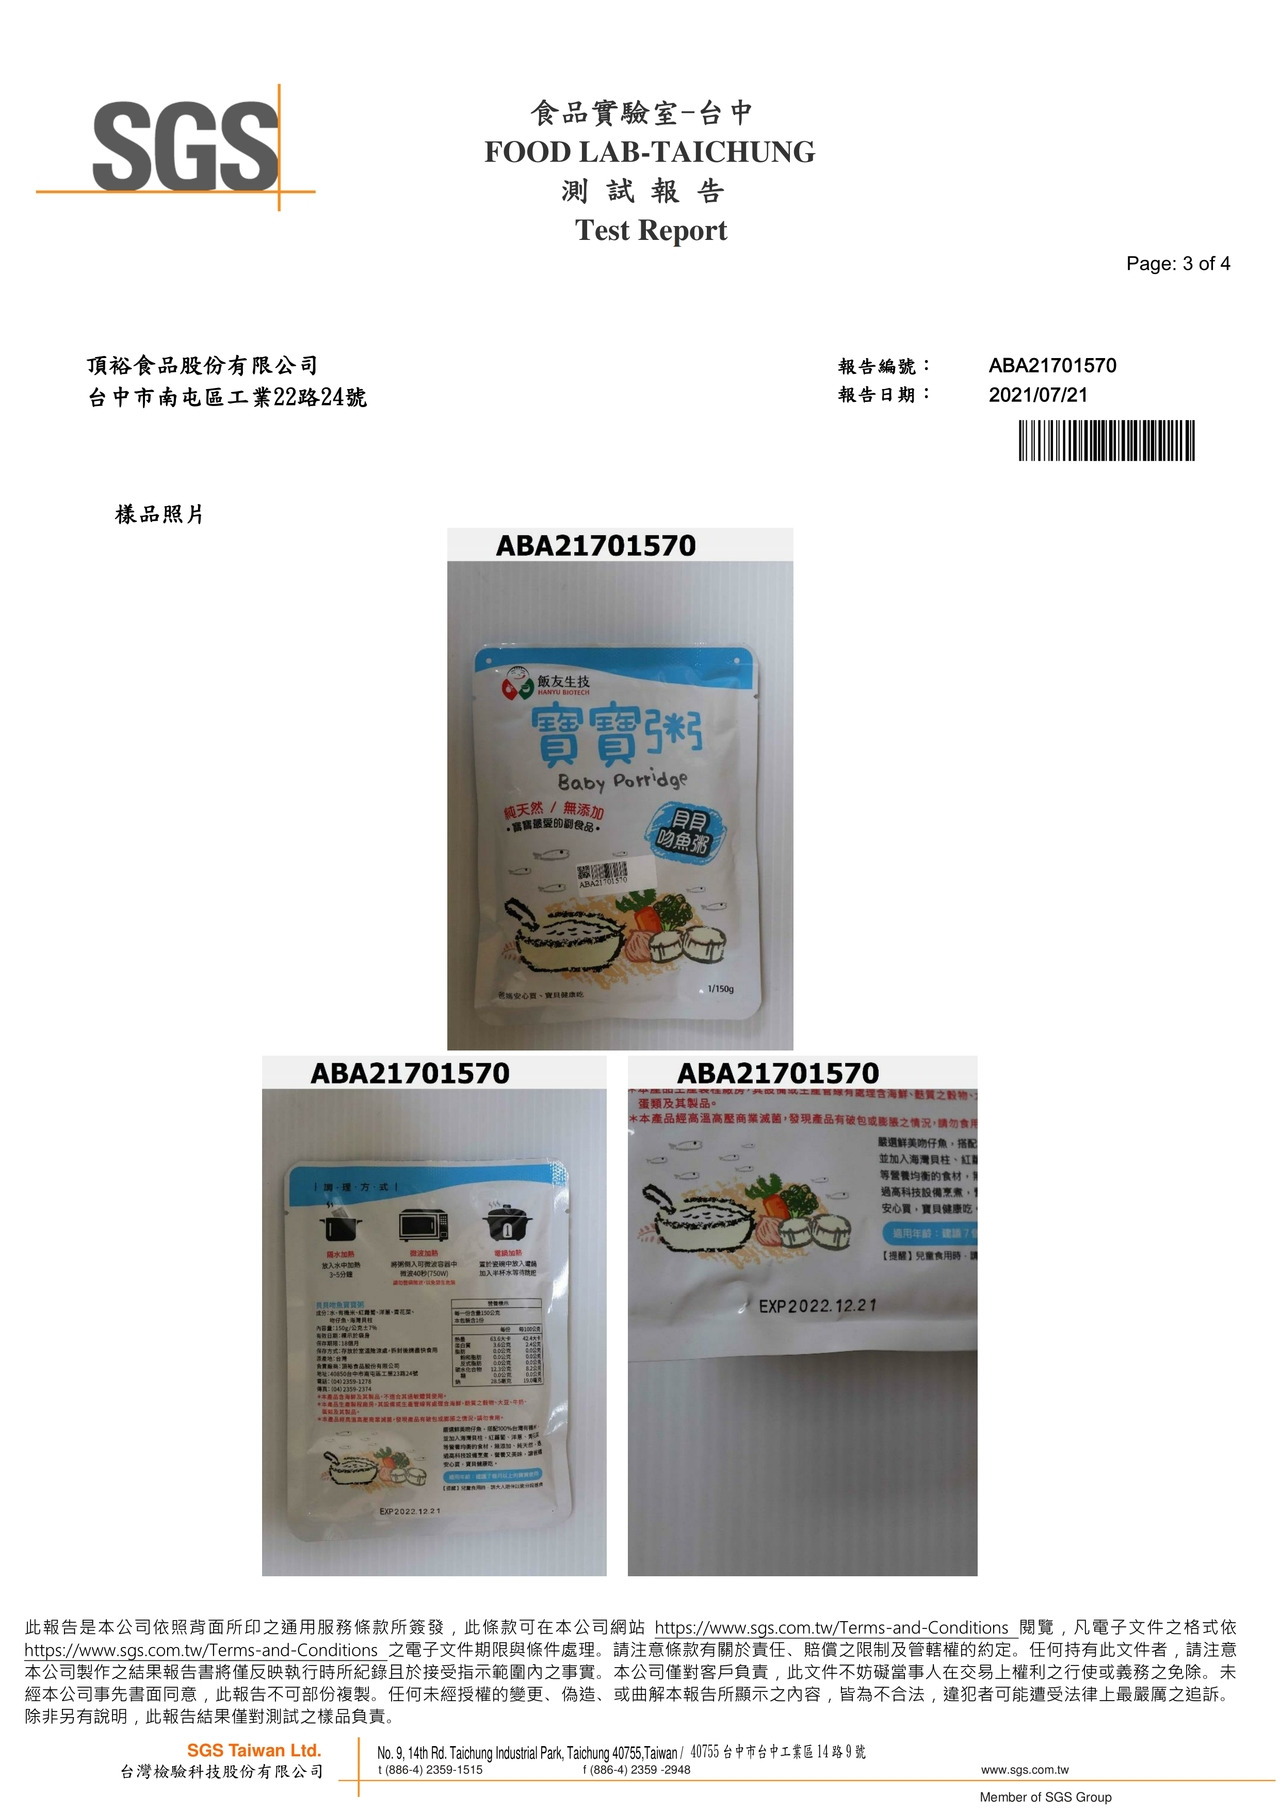 貝貝吻魚寶寶粥-重金屬(鉛鎘)檢驗報告2021.07.21